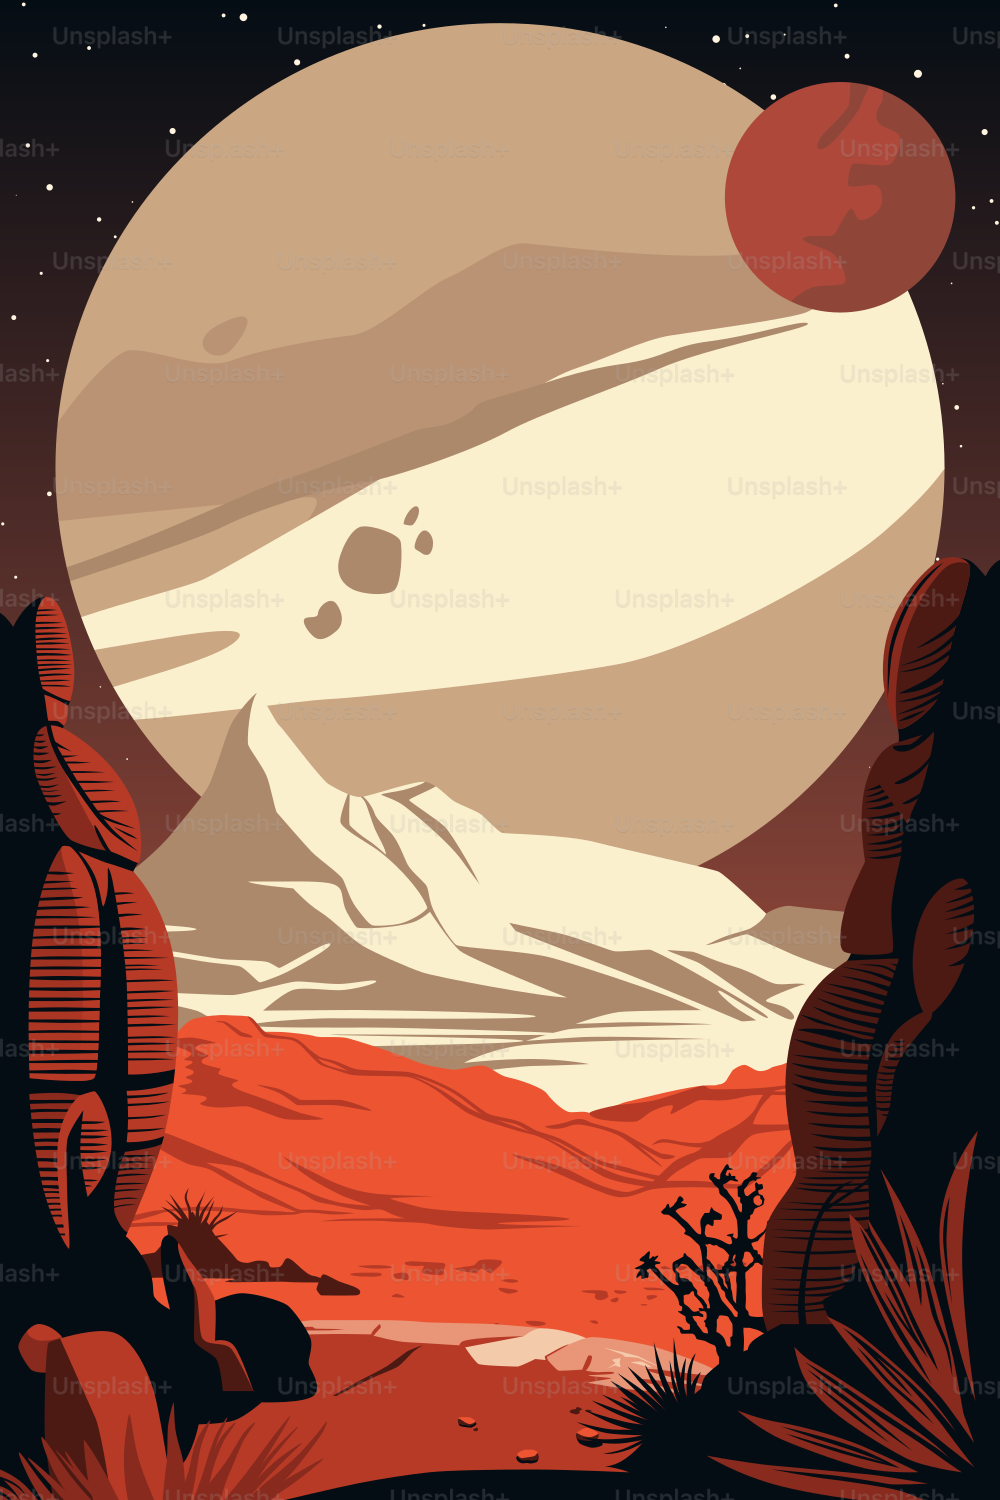 Weltraum-Poster.  Landschaft eines fernen, unbekannten roten Planeten da draußen. Dunkler Himmel mit einem riesigen Mond und einem Asteroiden. Sterne neuer Galaxien.